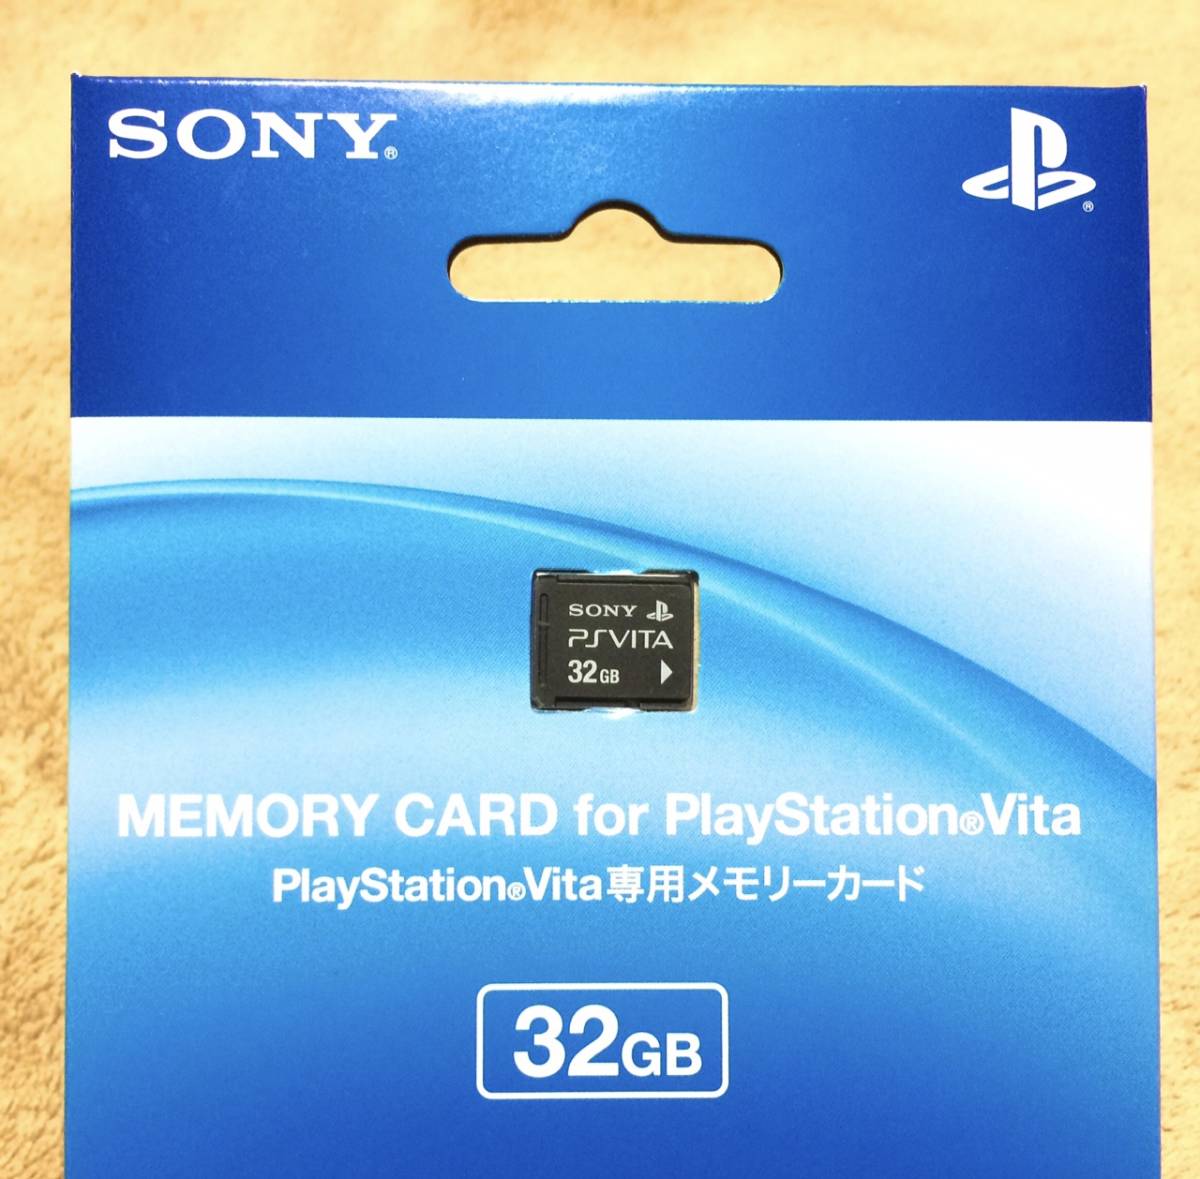 ☆新品未開封品☆Playstation Vita メモリーカード『32GB』送料210円